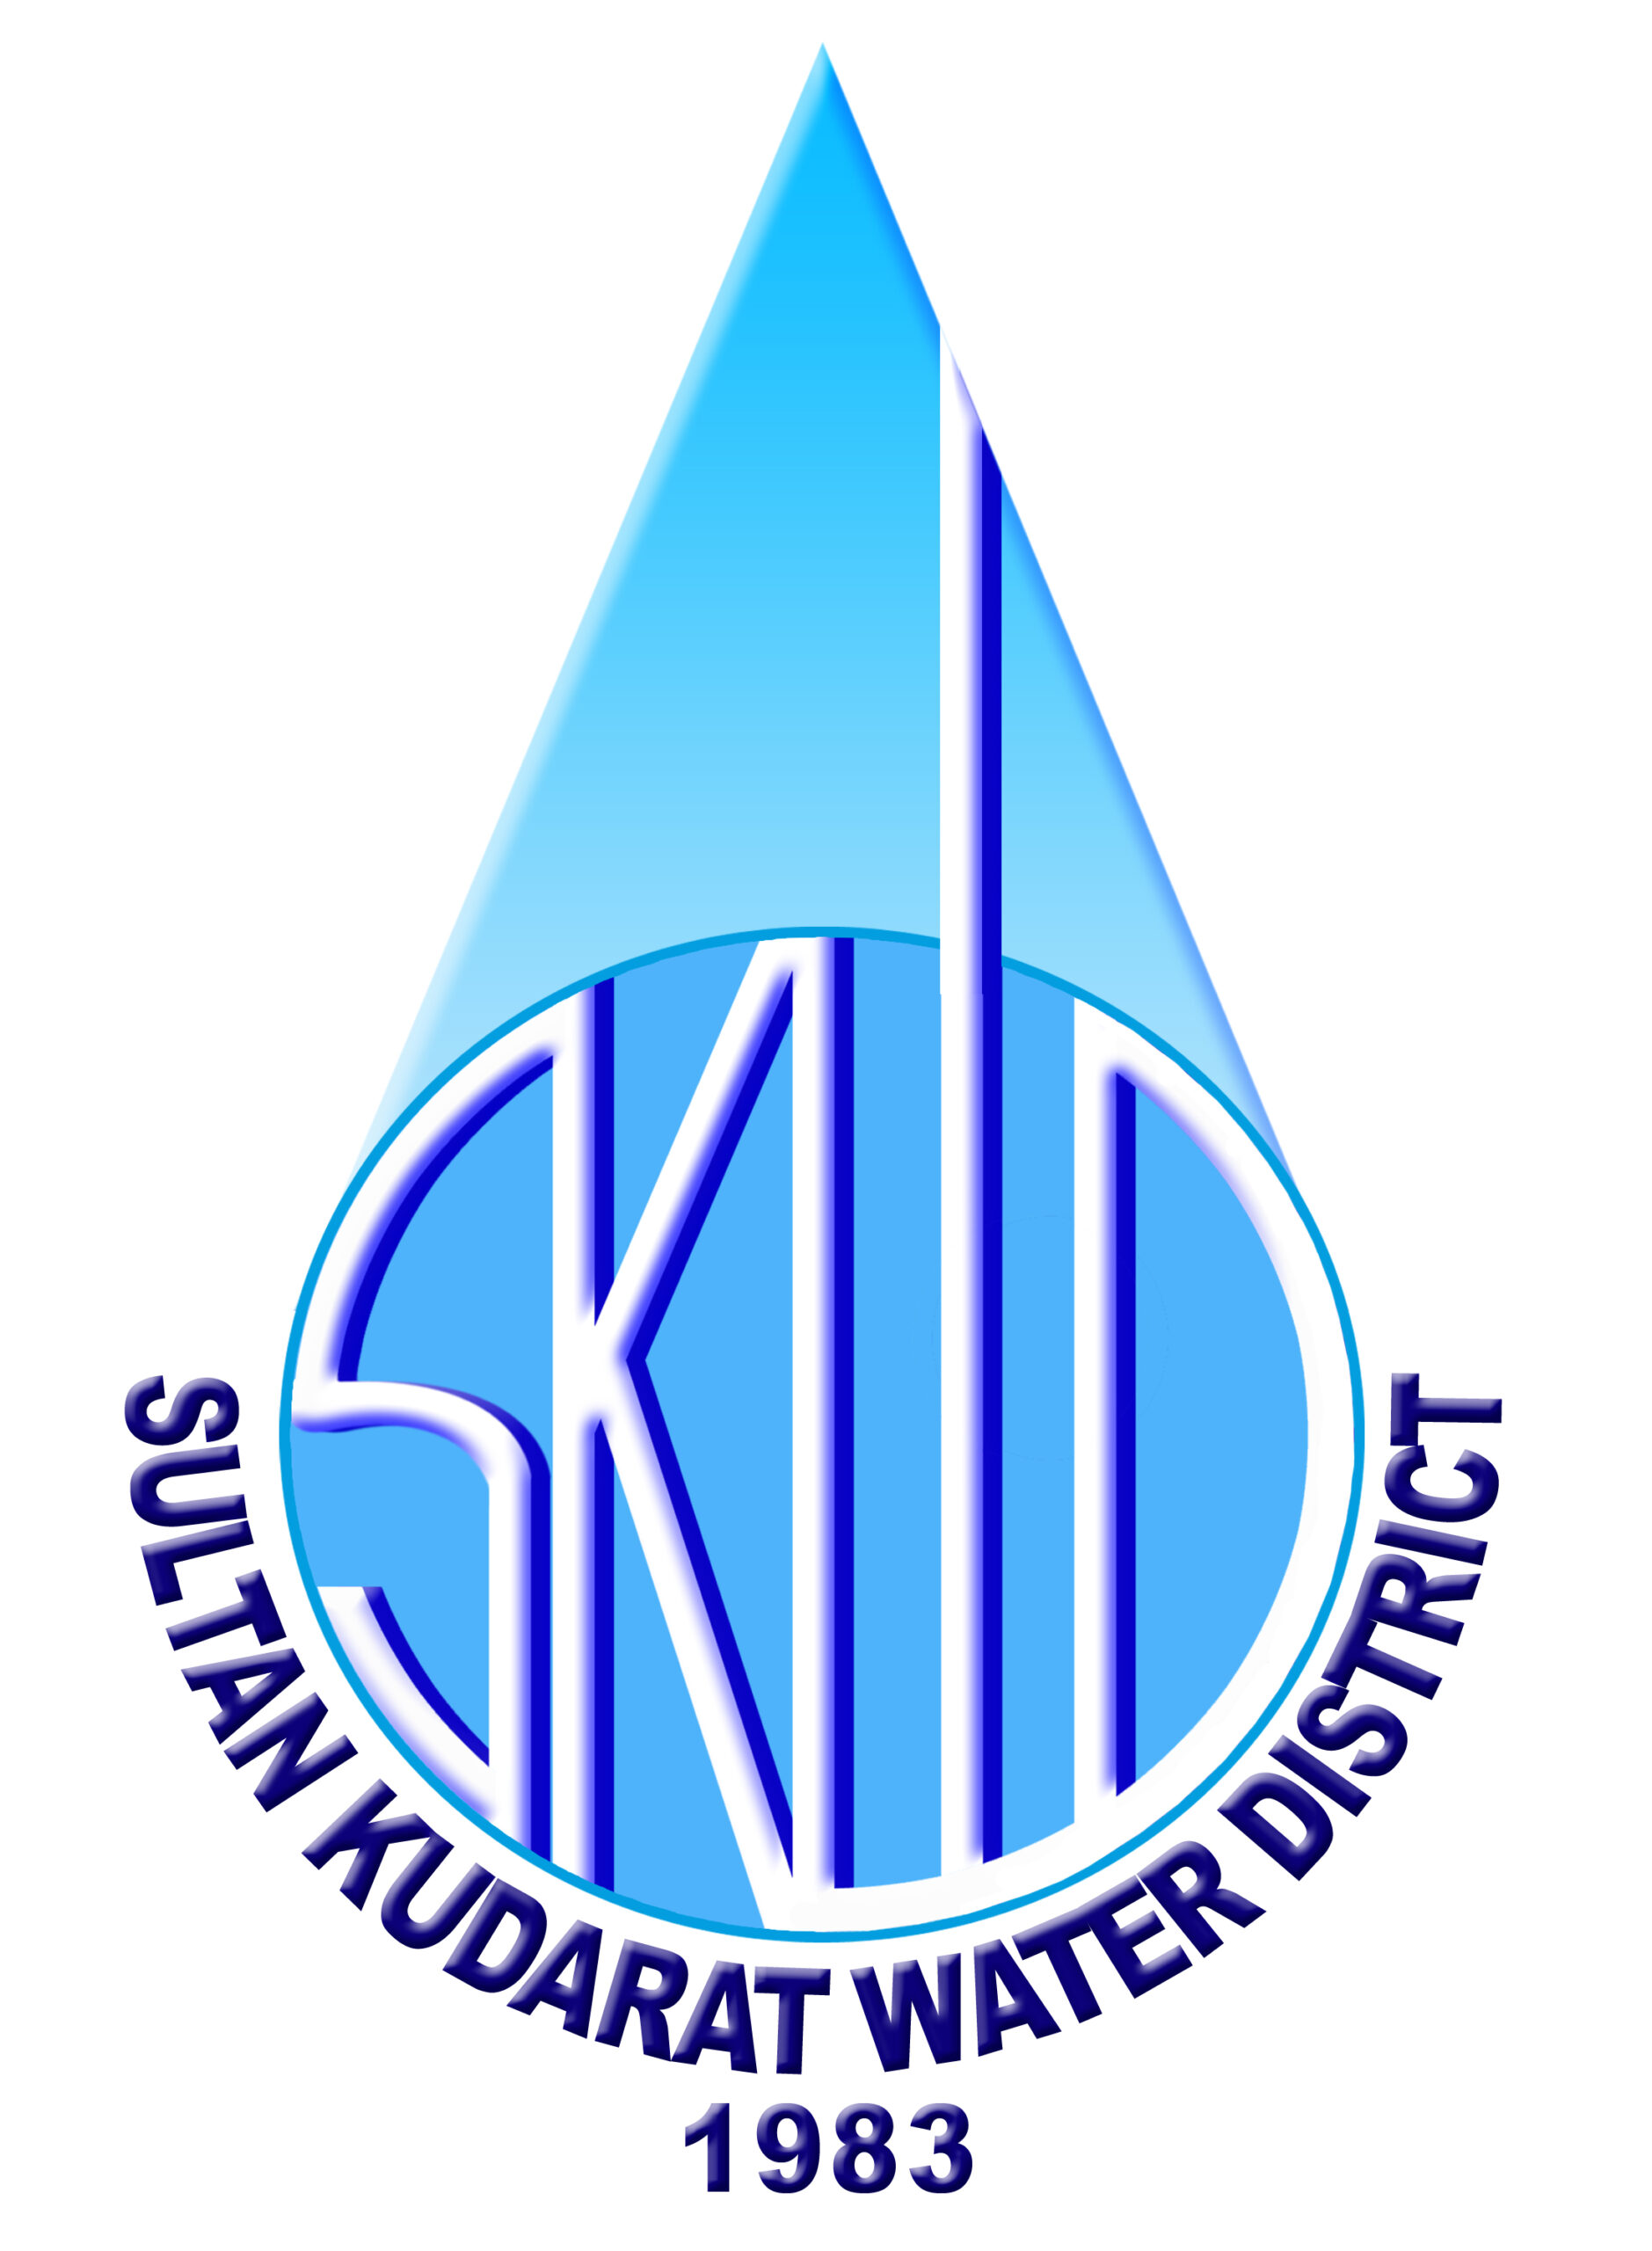 SULTAN KUDARAT WATER DISTRICT